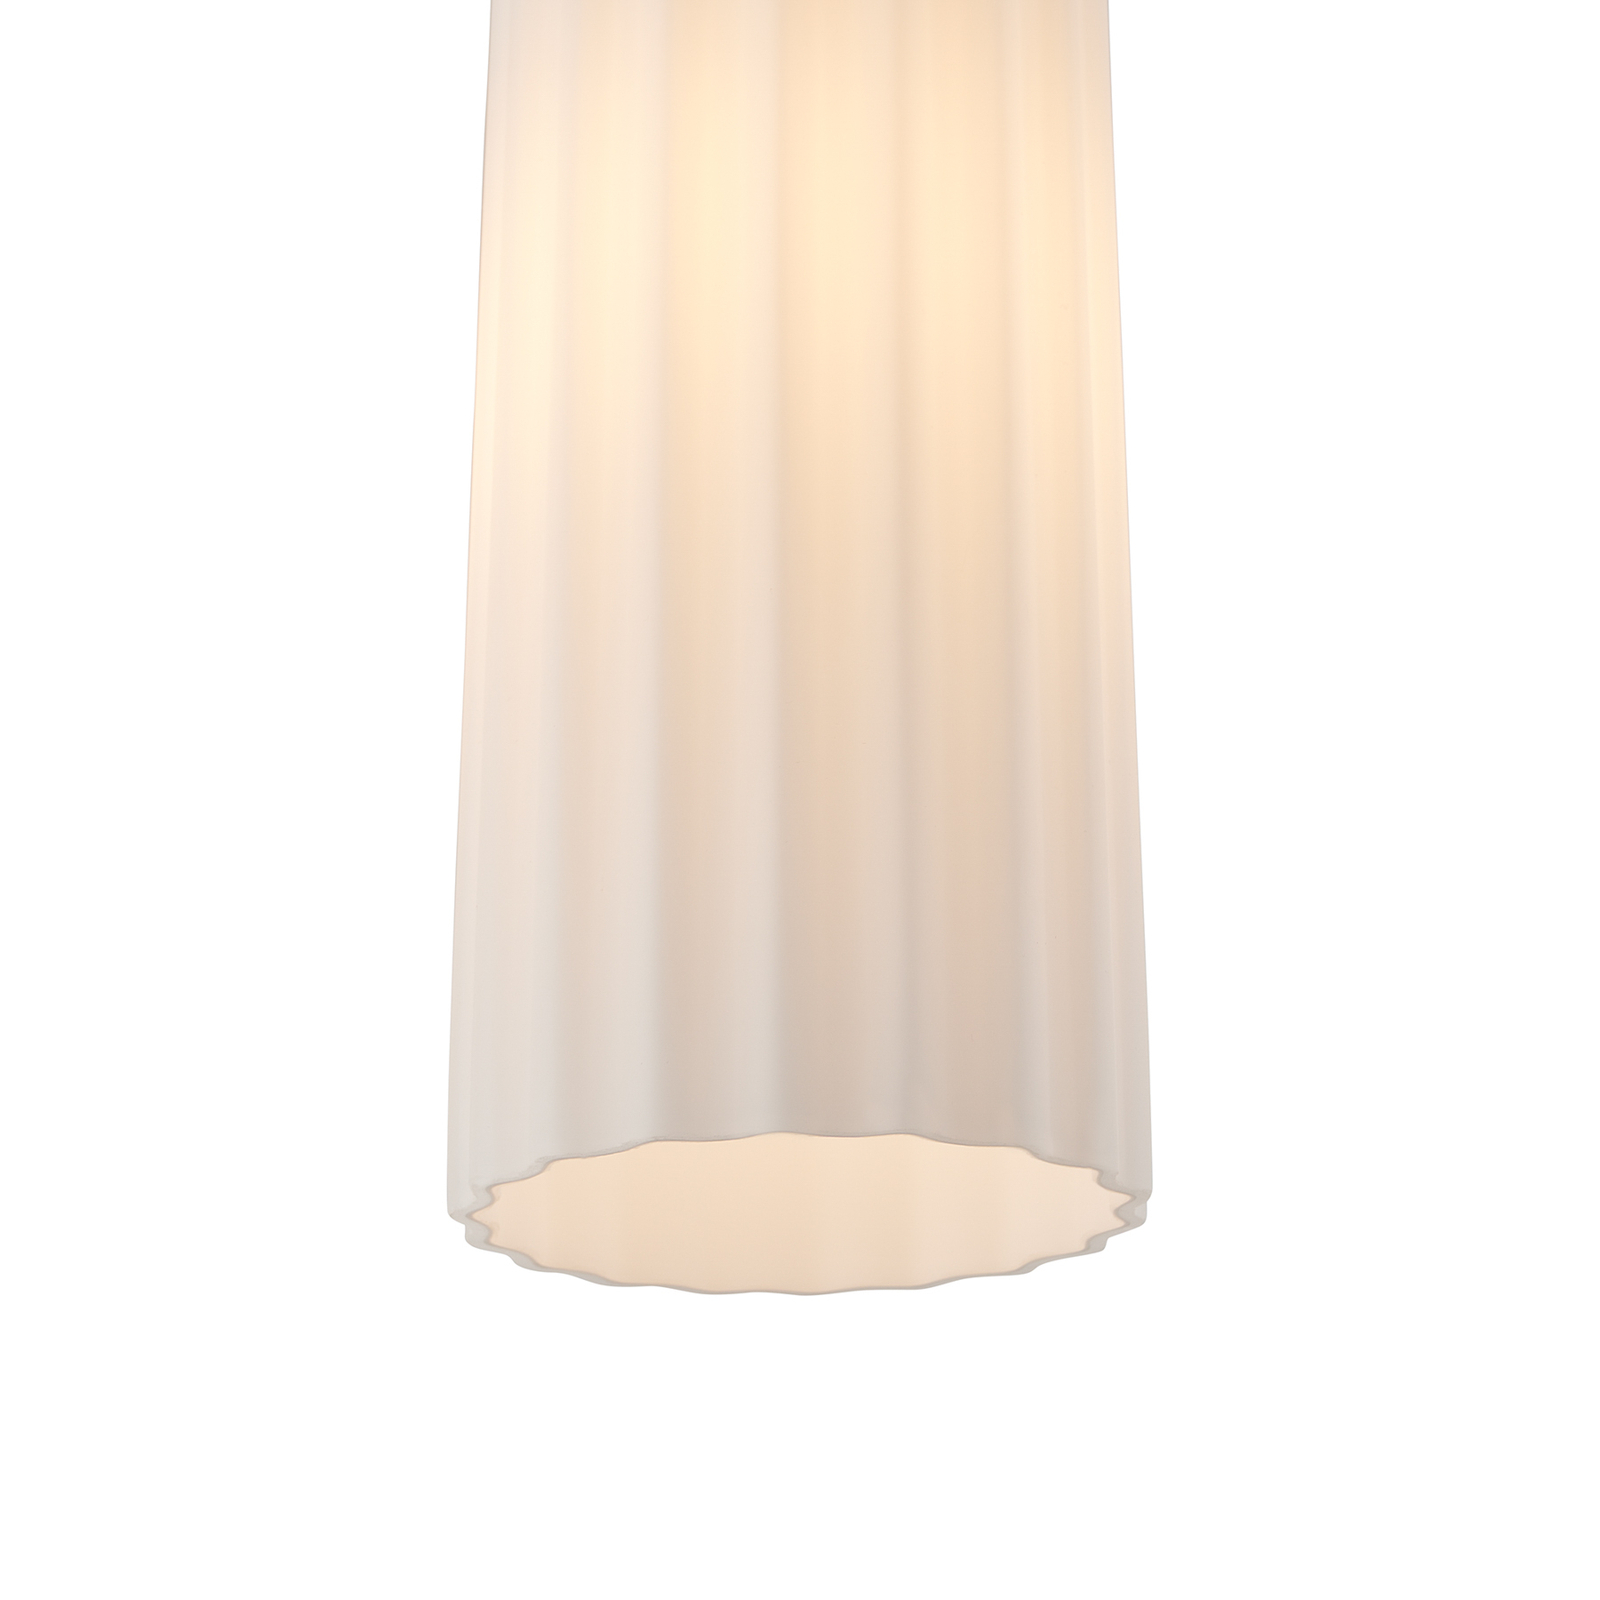 Hanglamp Miella, geribbeld glas, gesatineerd/wit